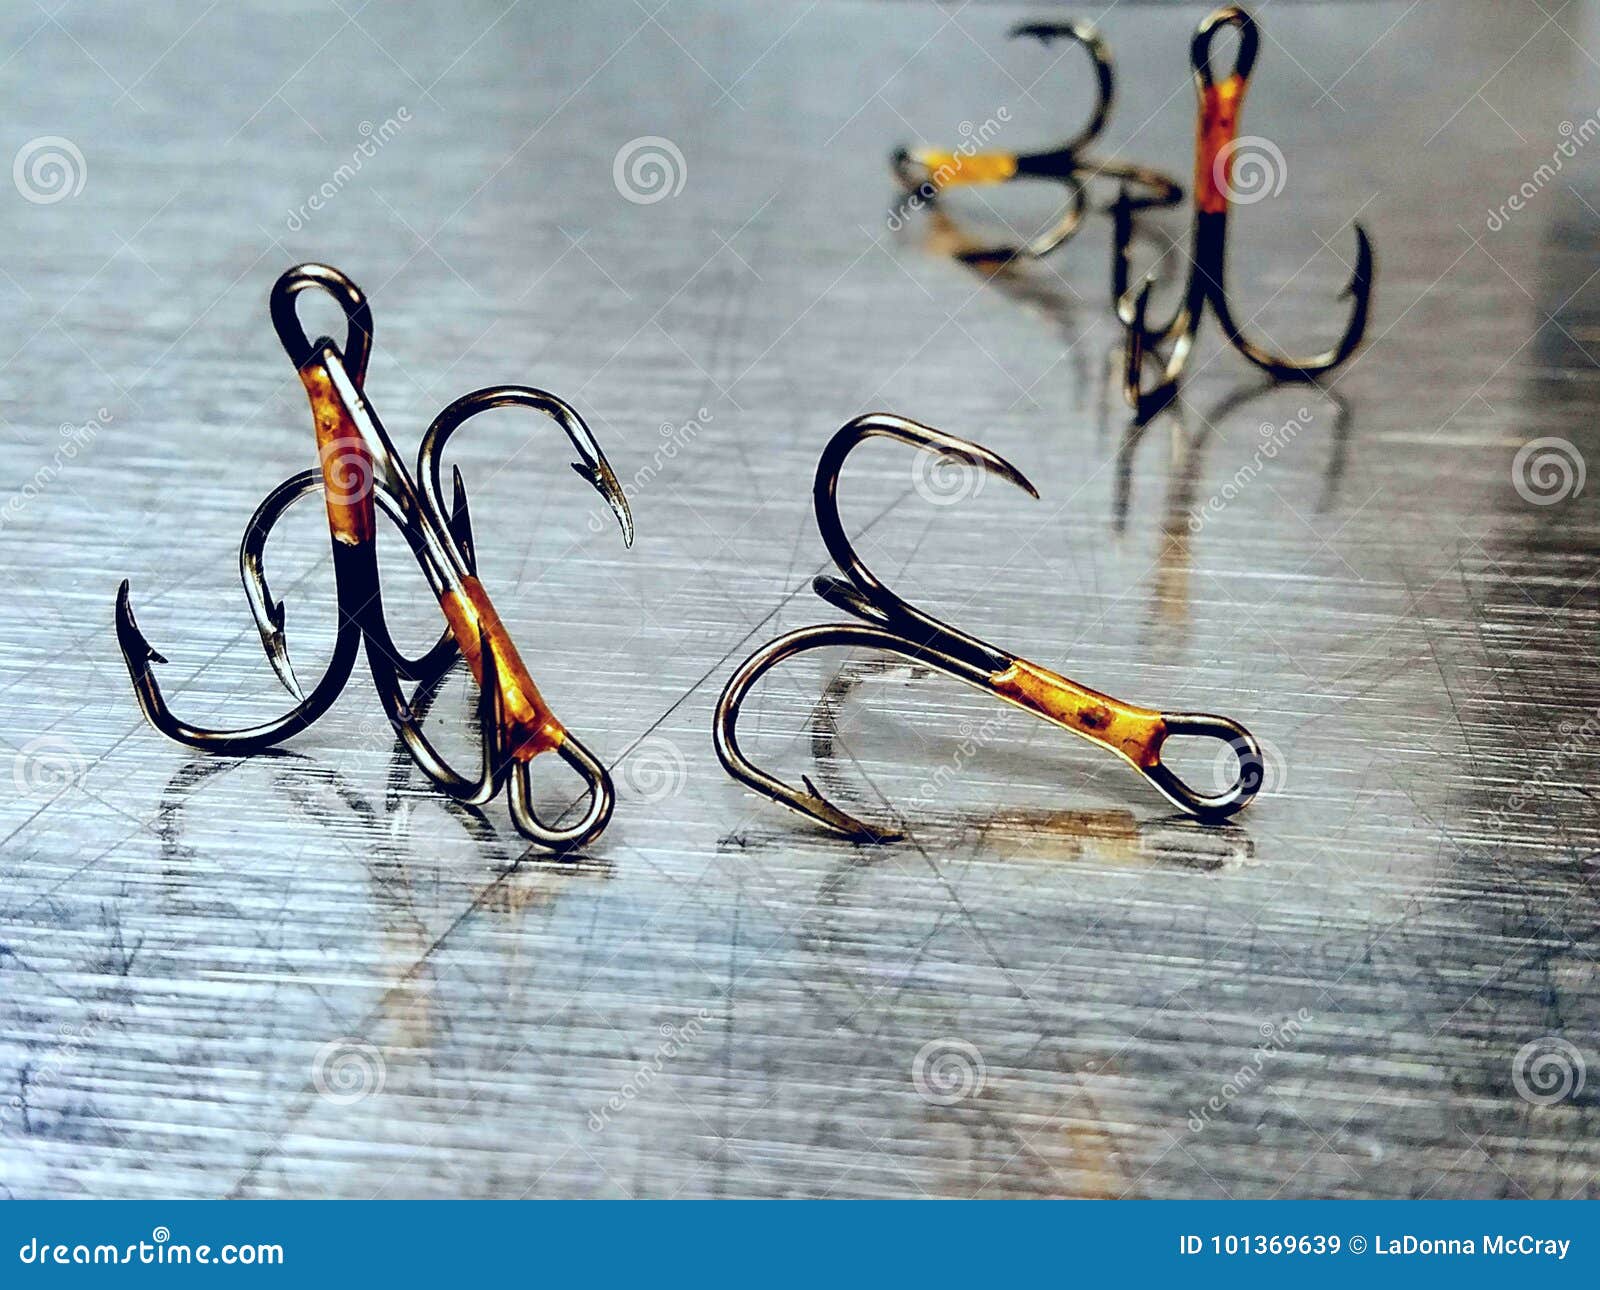 Reflection of Fishing Hooks Stock Image - Image of unhooked, prong:  101369639